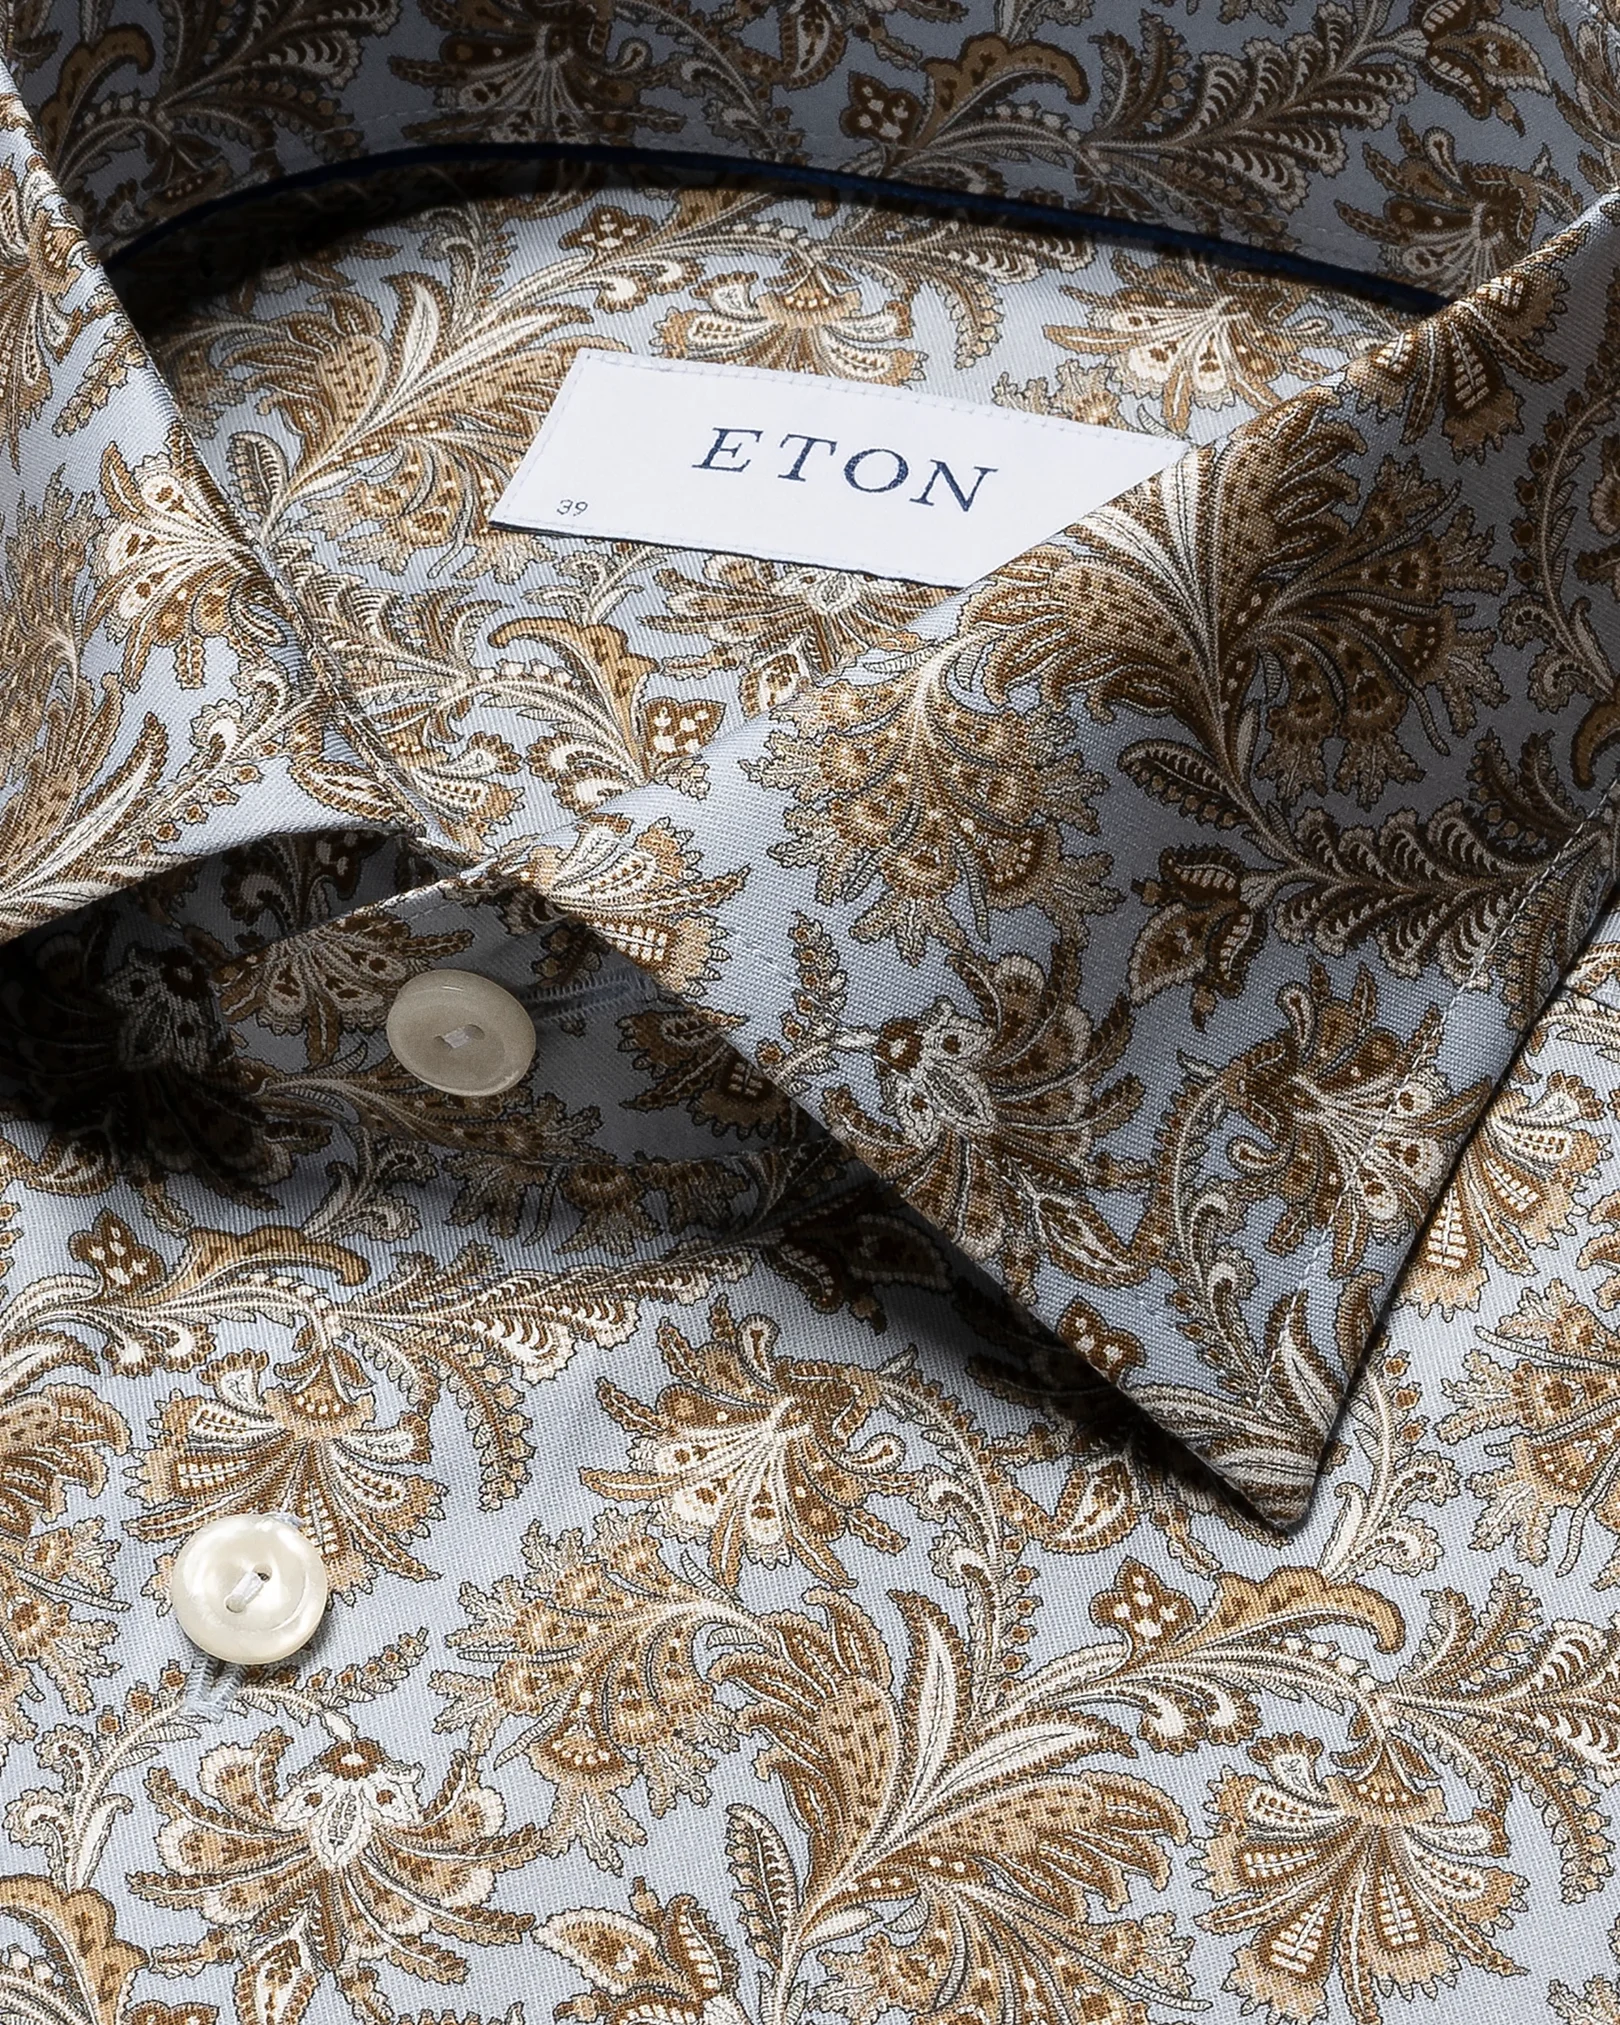 Eton - brown paisley printed shirt